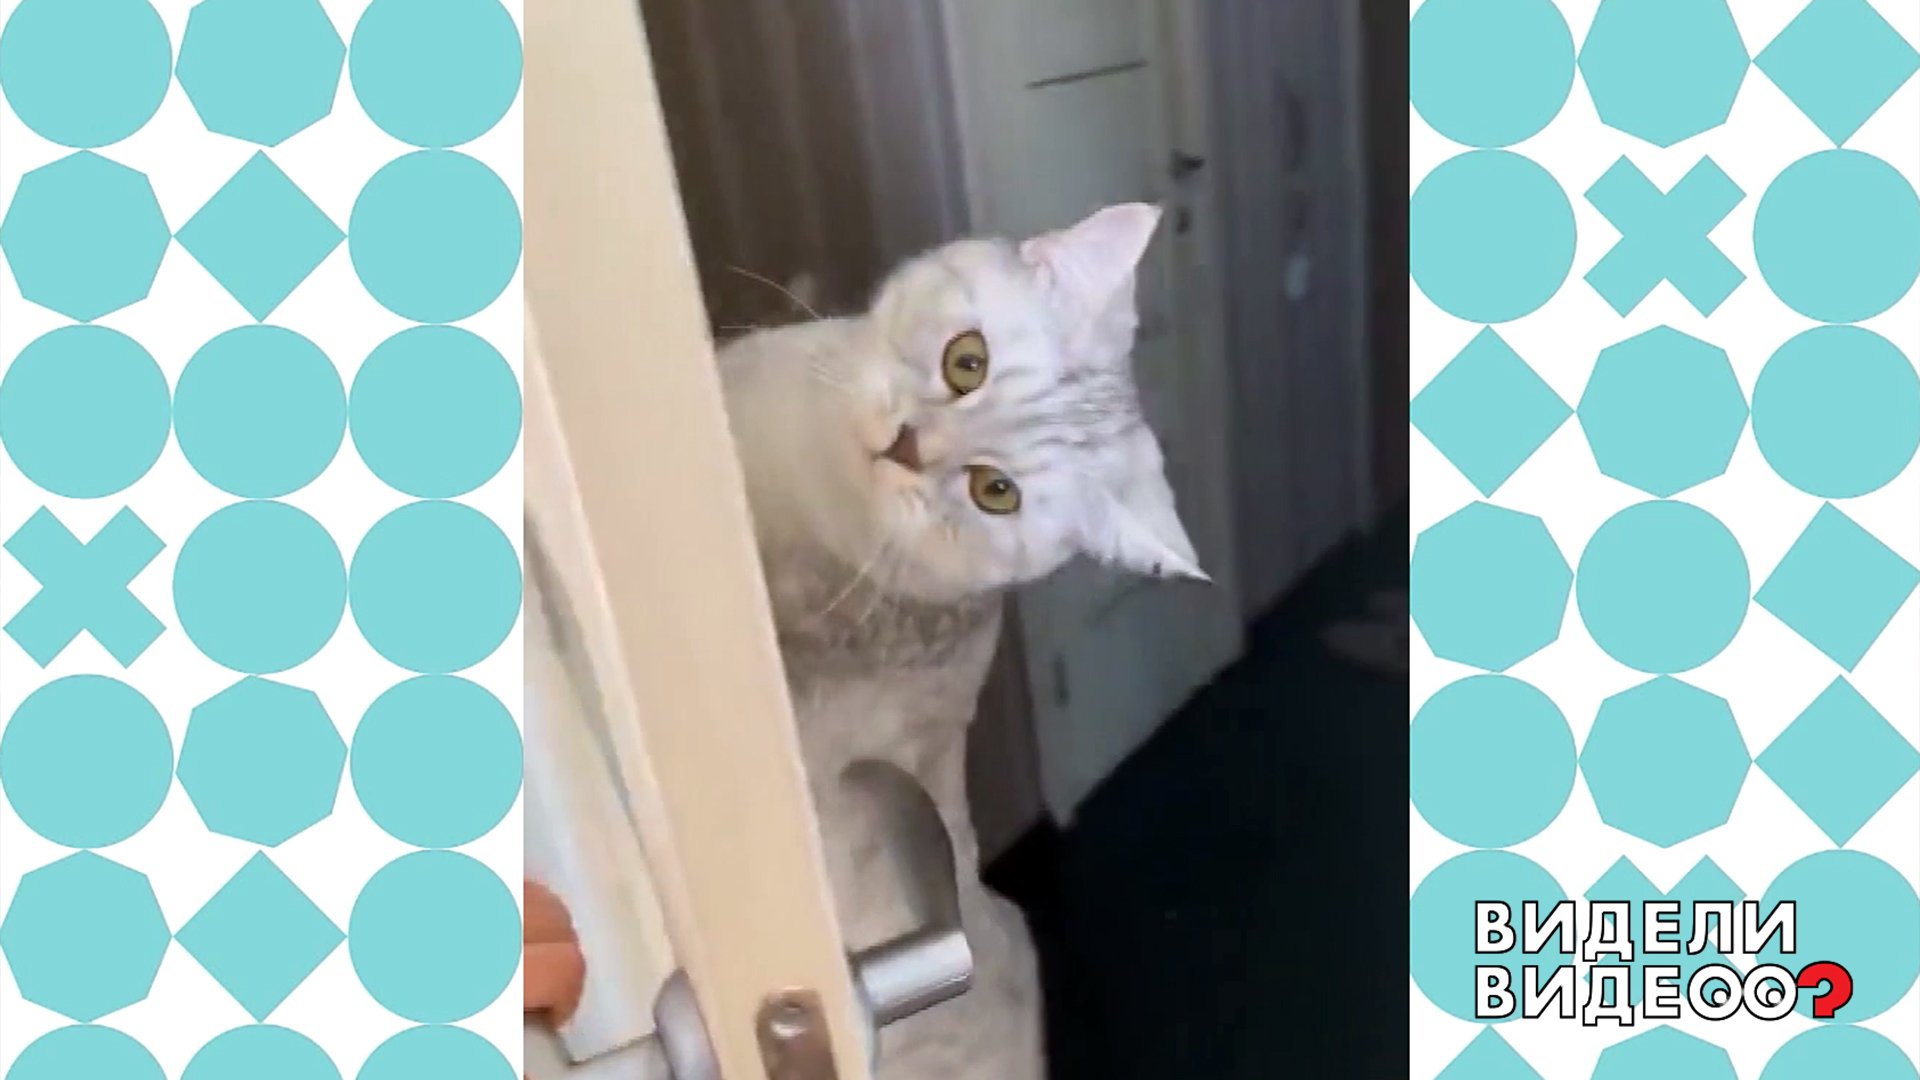 Открыть дверь видное. Кошка за дверью. Висит на двери.